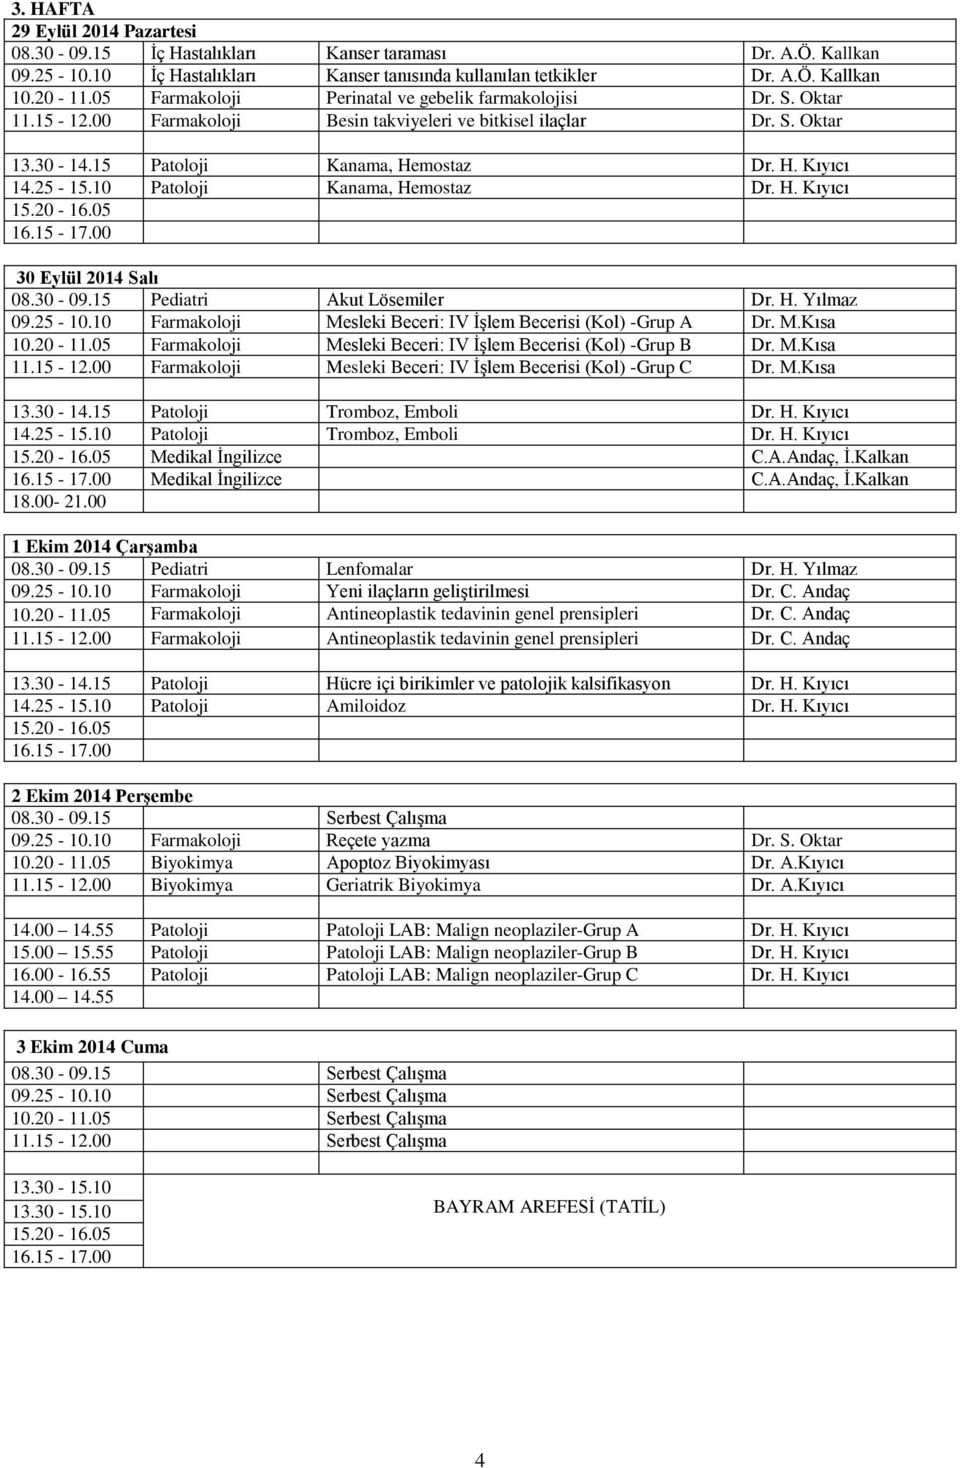 10 Patoloji Kanama, Hemostaz Dr. H. Kıyıcı 30 Eylül 2014 Salı 08.30-09.15 Pediatri Akut Lösemiler Dr. H. Yılmaz 09.25-10.10 Farmakoloji Mesleki Beceri: IV İşlem Becerisi (Kol) -Grup A Dr. M.Kısa 10.